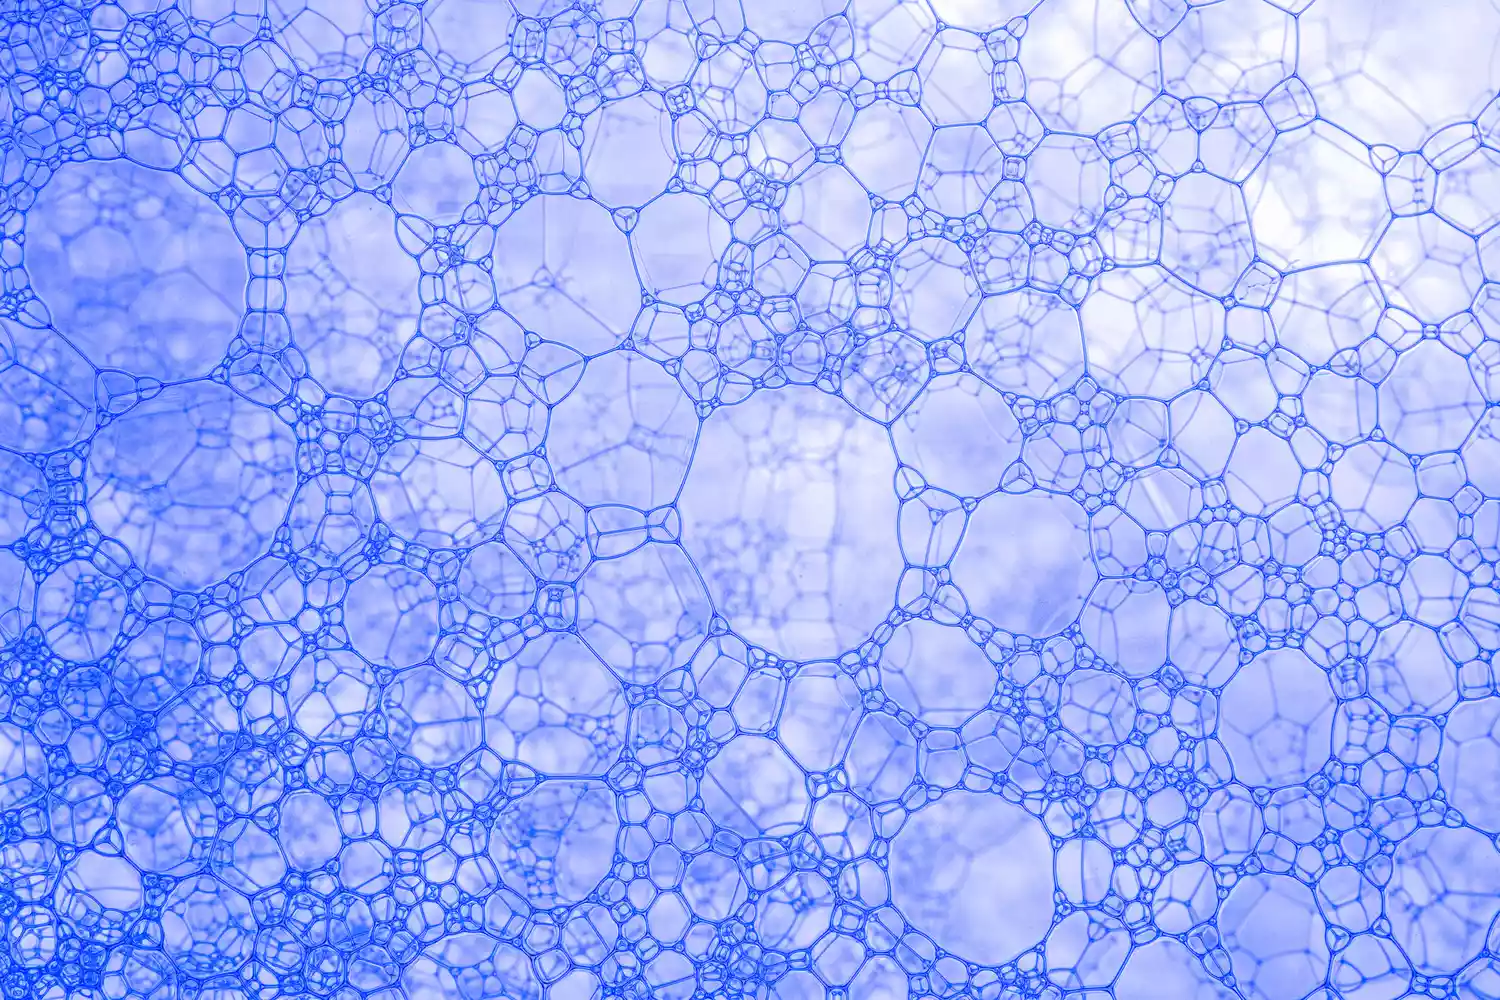 Макроскопический вид пузырьков воздуха на голубой поверхности